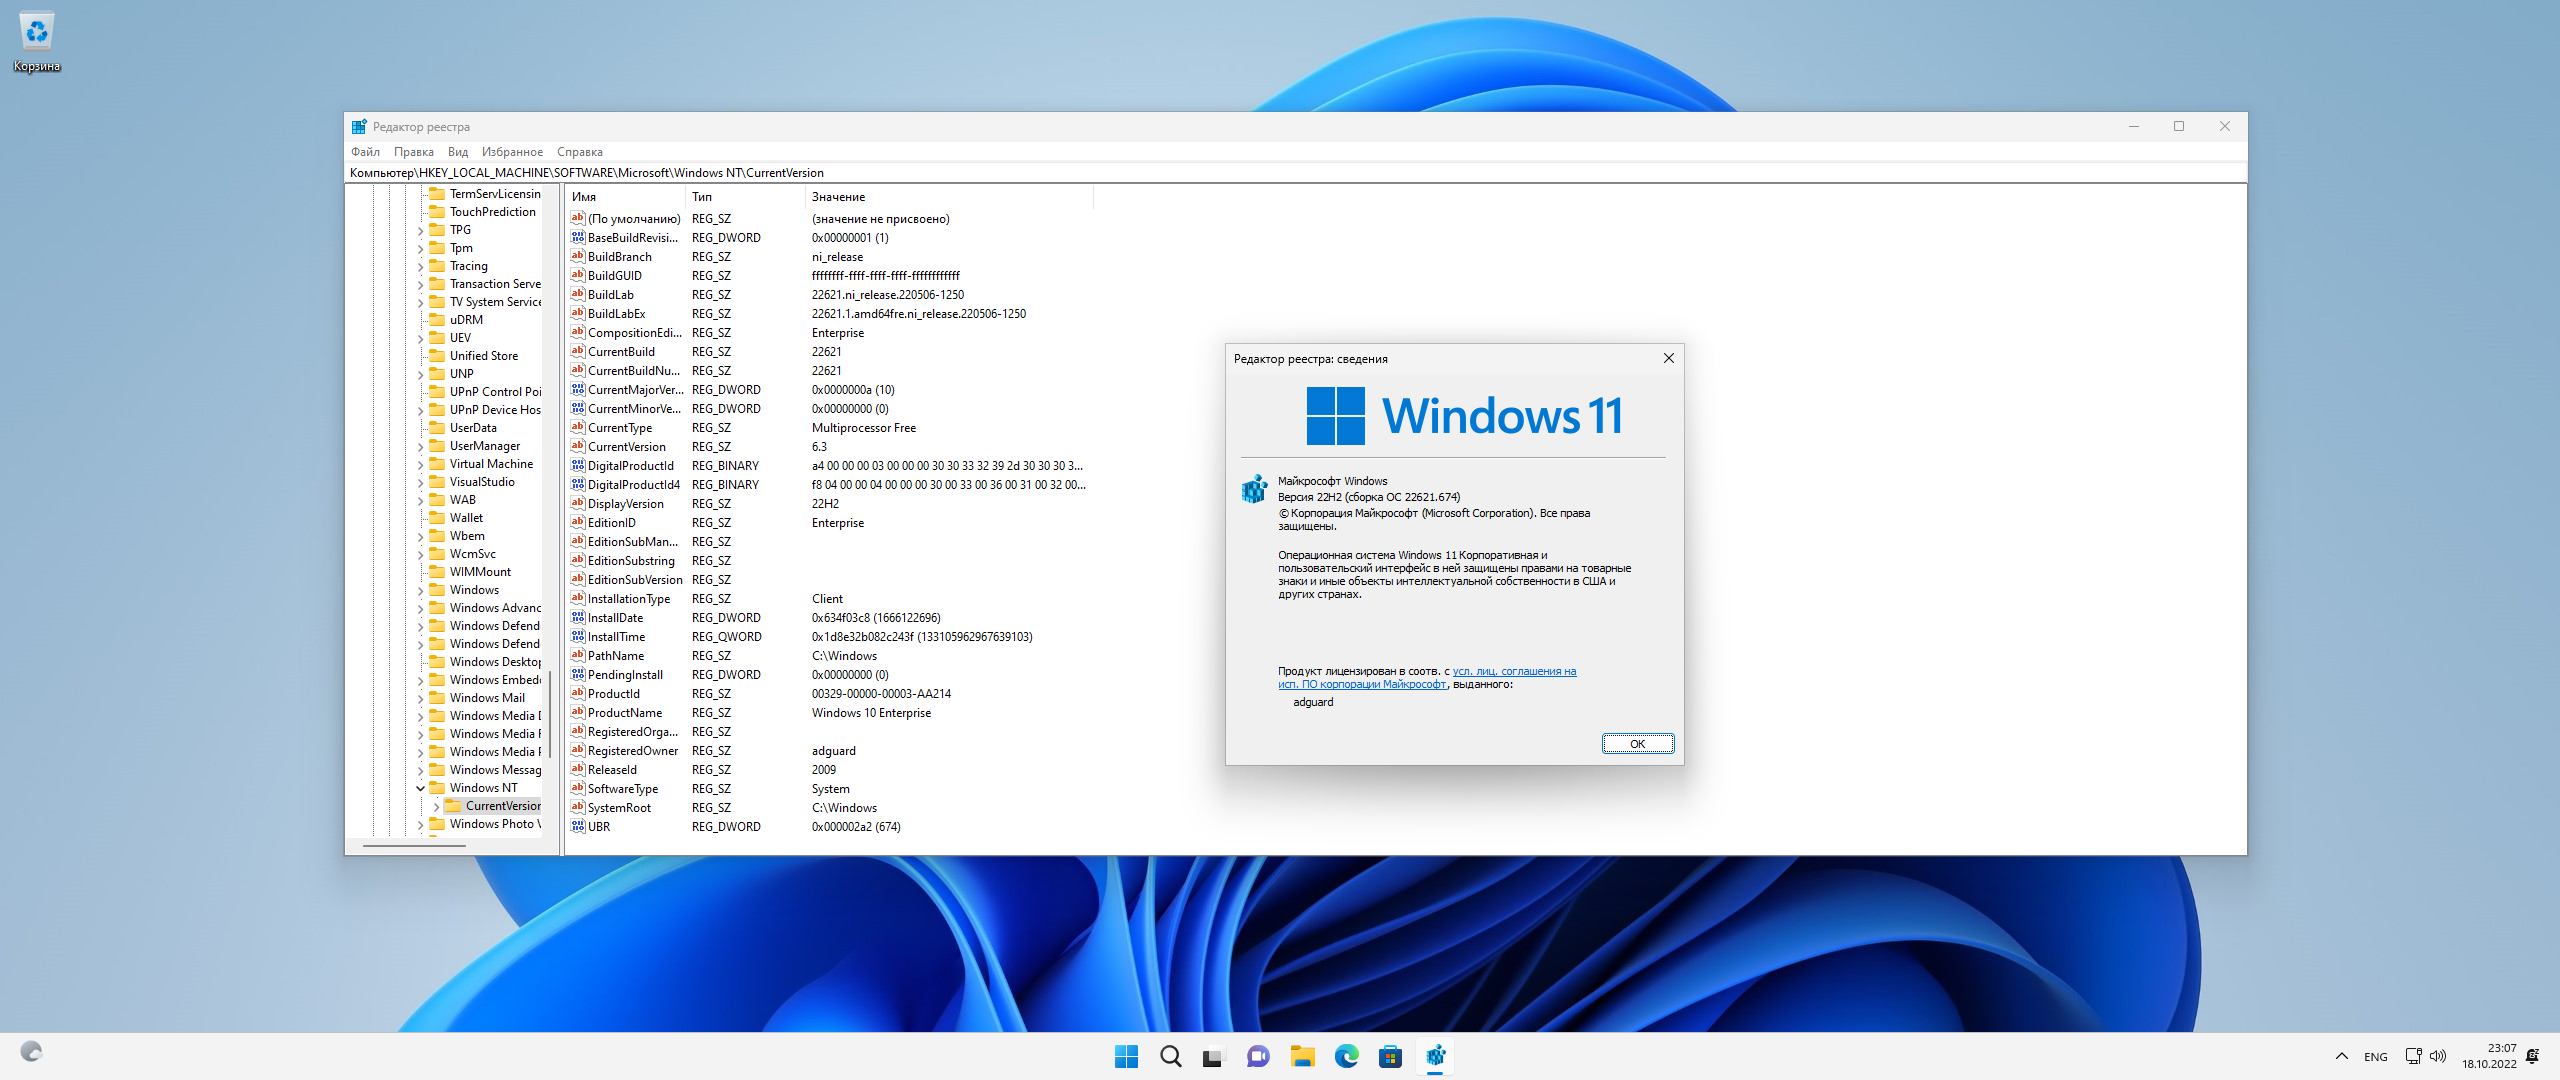 Windows 11 reg. Виндовс 10 версия 21h2 64 бит. Интерфейс 11 винды. Win 11 Скриншоты. Обновление виндовс 11.